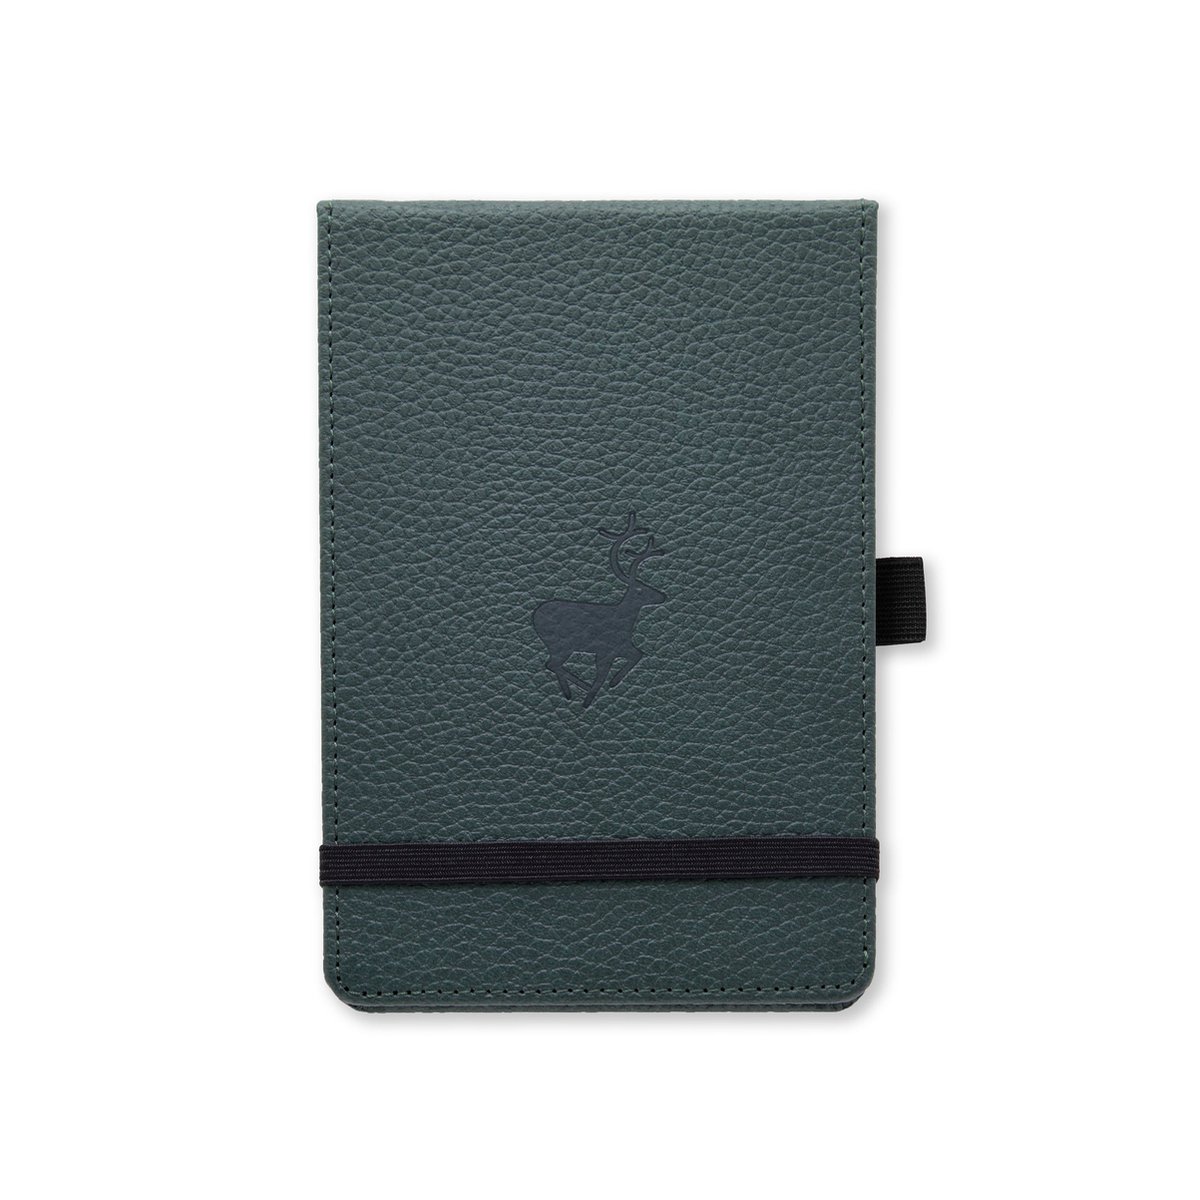 Dingbats* Wildlife A6 Notitieboek – Green Deer Stippen – Bullet Journal met 100 gsm Inktvrij Papier – Schetsboek met Harde Kaft, Binnenvak, Elastische Sluiting en Bladwijzer